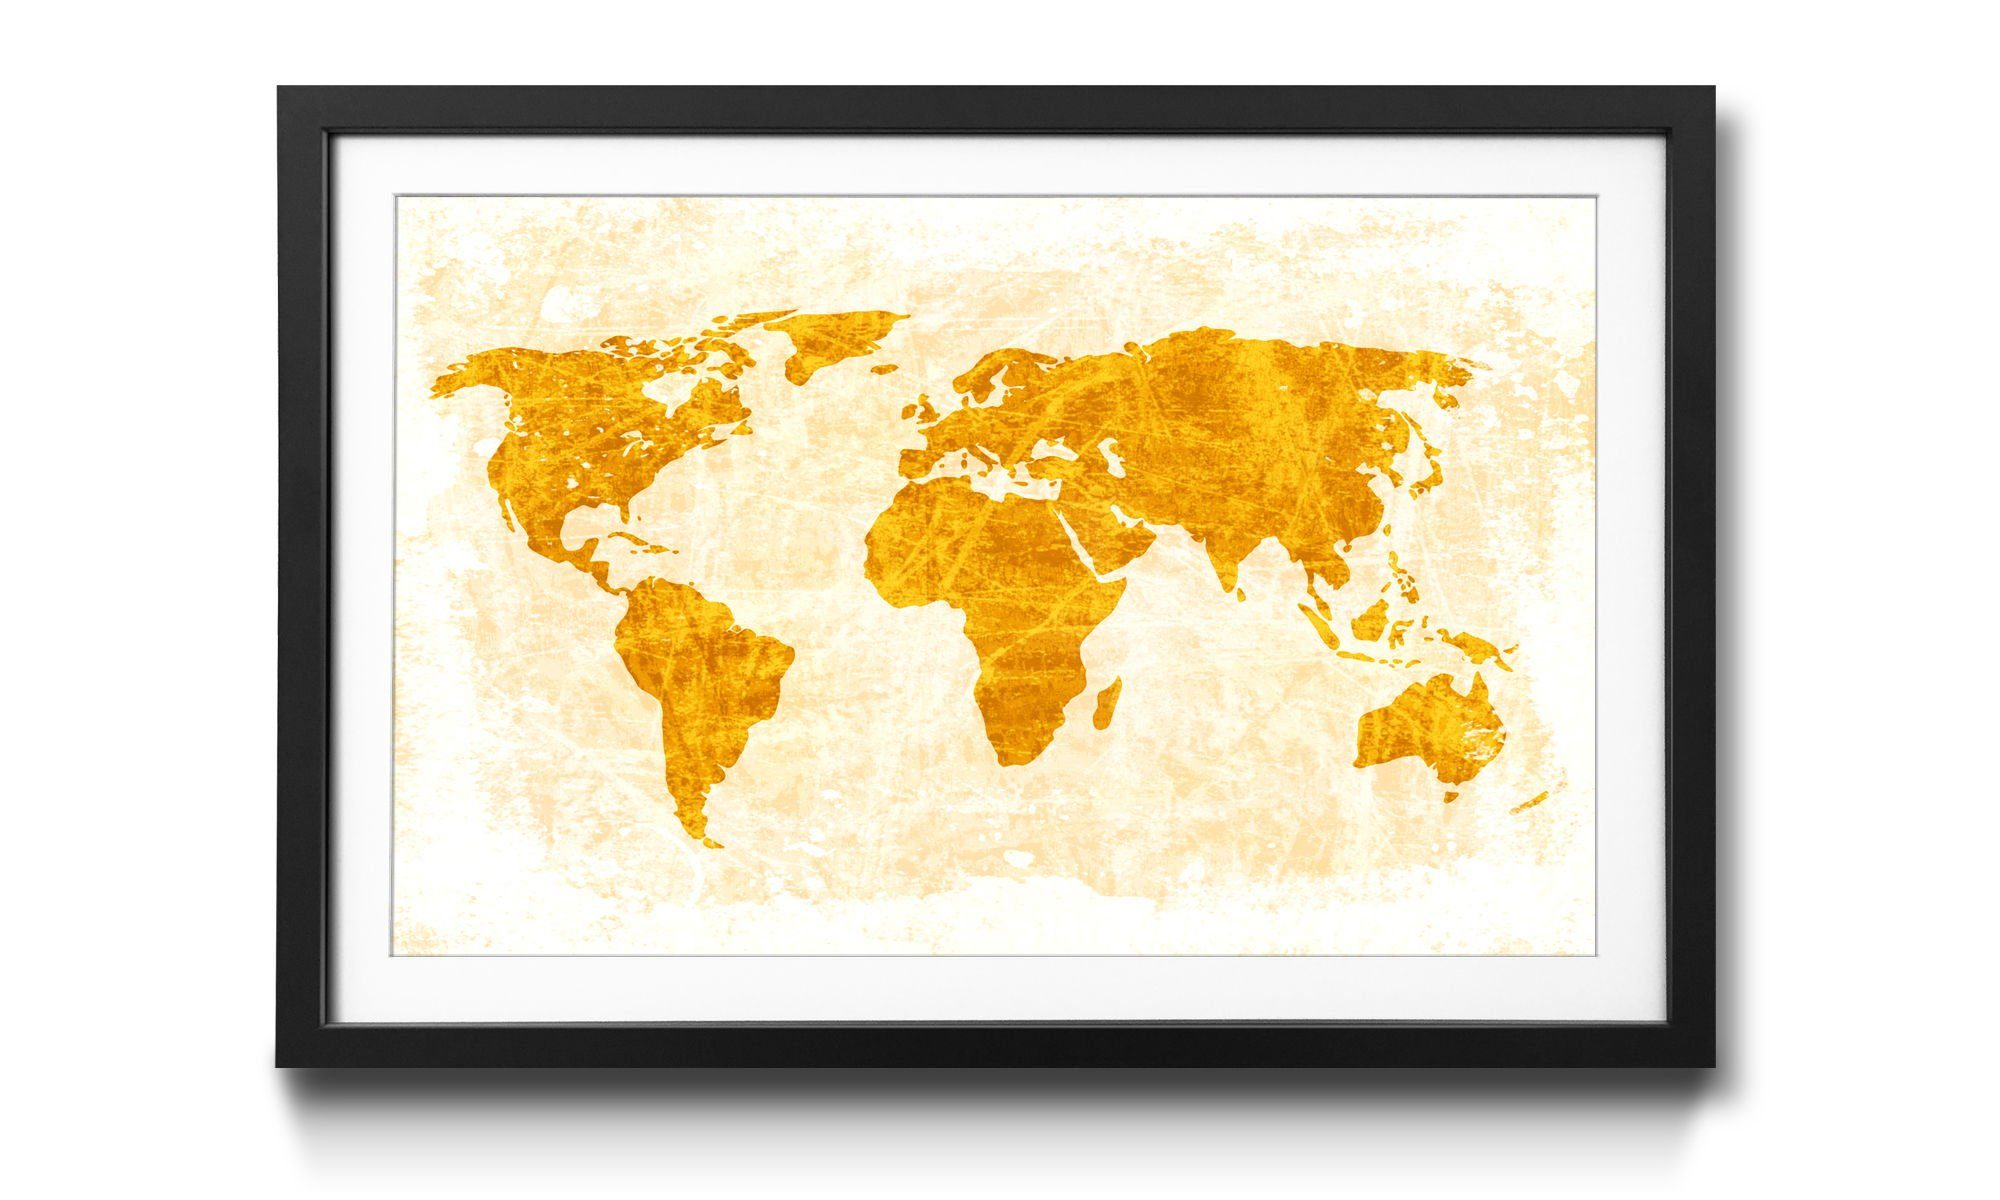 WandbilderXXL Kunstdruck Worldmap No.7, Weltkarte, Wandbild, in 4 Größen erhältlich